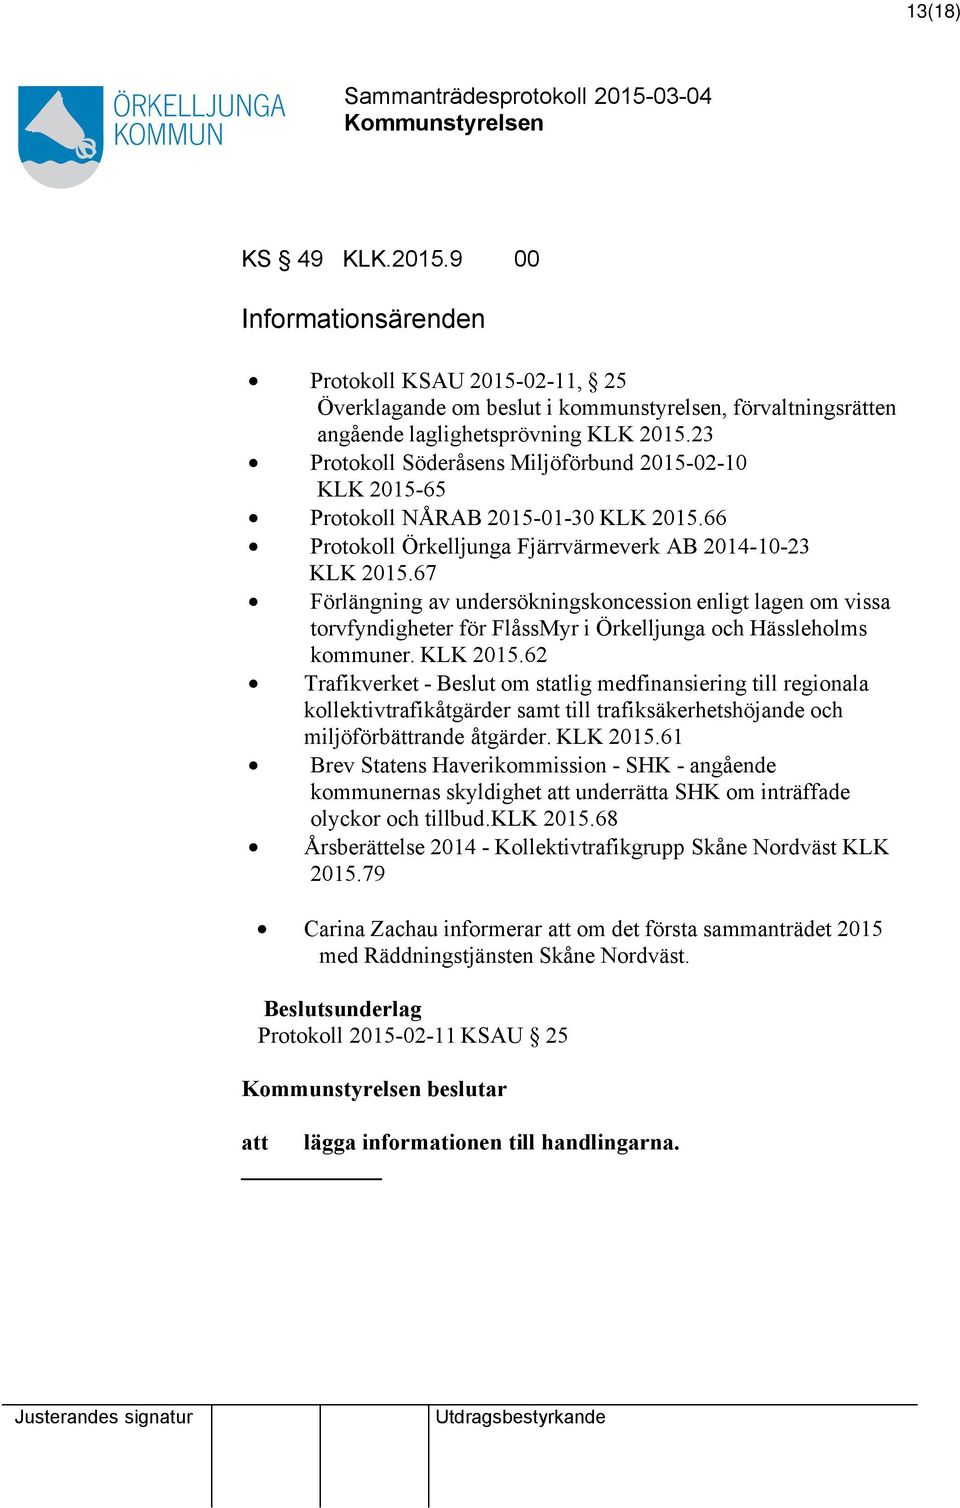 67 Förlängning av undersökningskoncession enligt lagen om vissa torvfyndigheter för FlåssMyr i Örkelljunga och Hässleholms kommuner. KLK 2015.